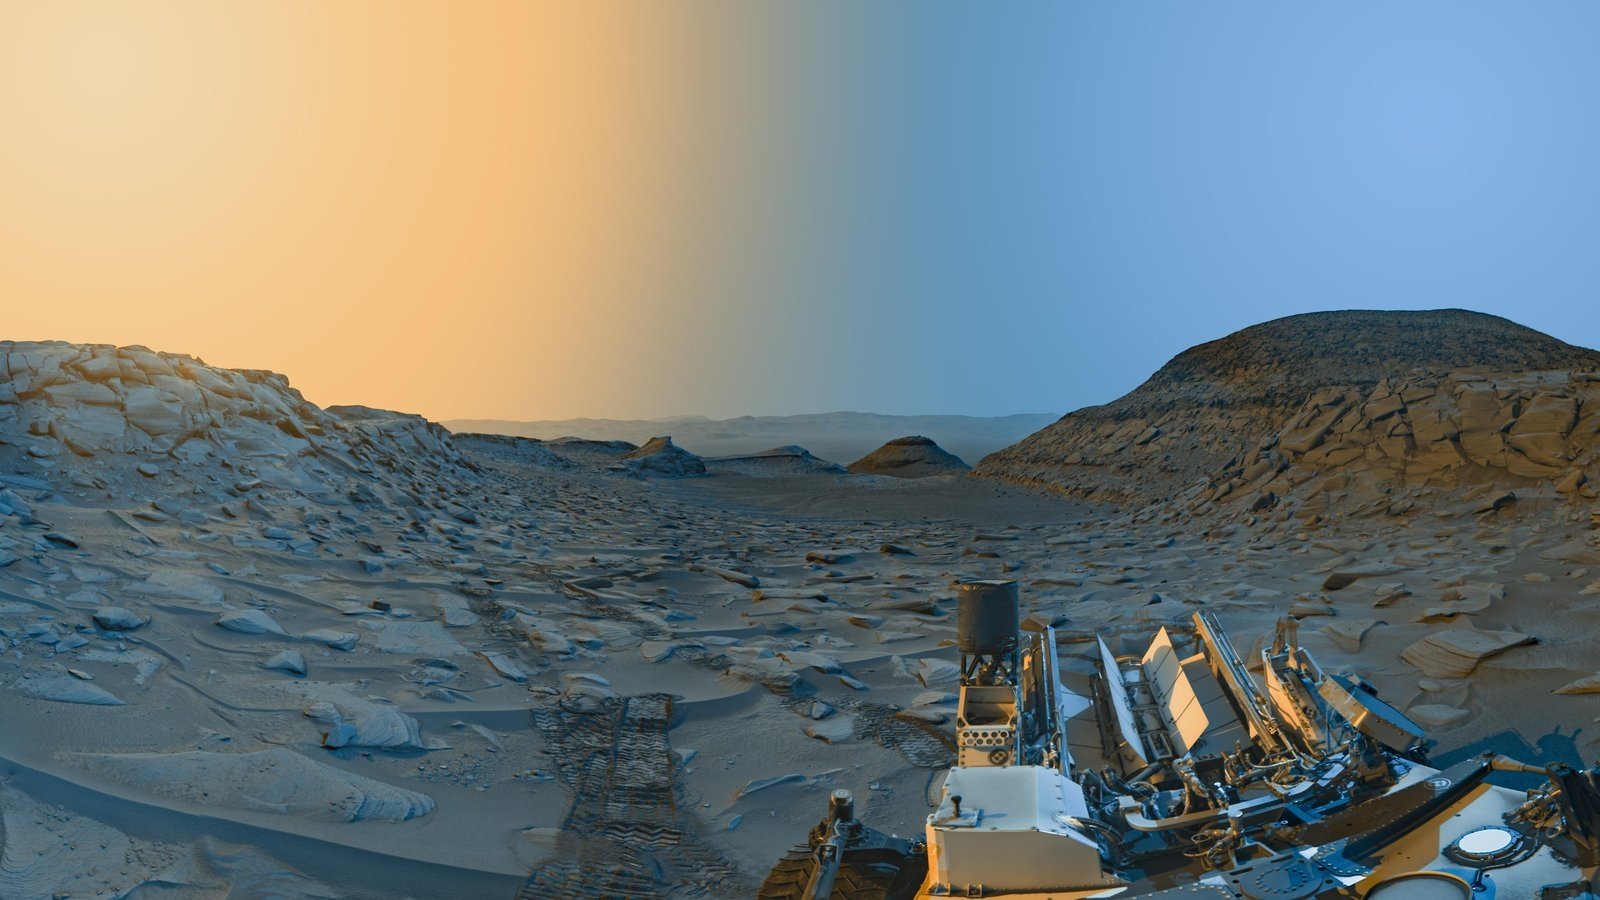 NASA's Curiosity rover